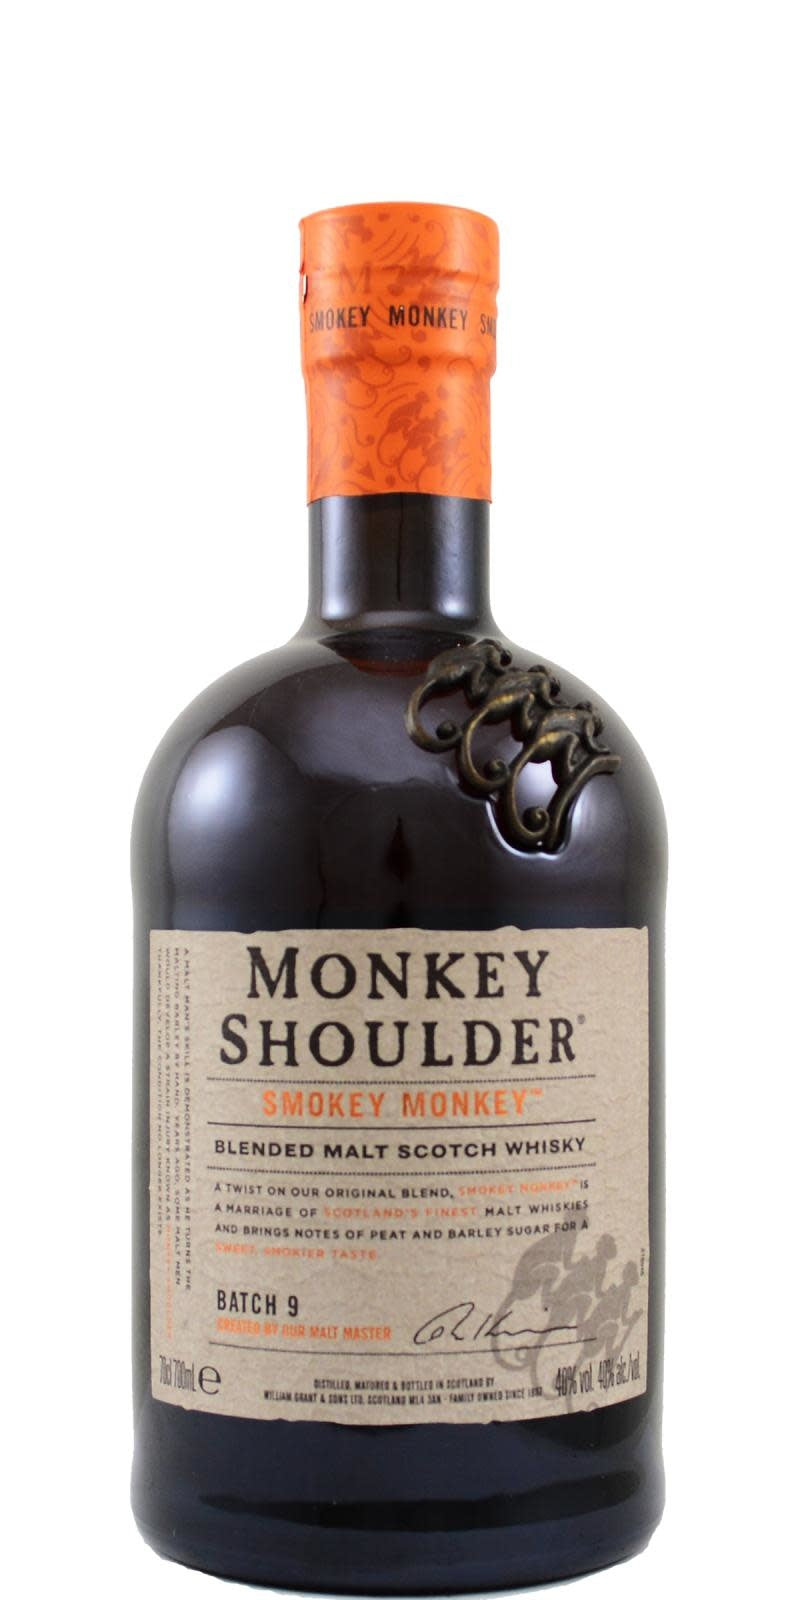 BUY] Monkey Shoulder Smokey Monkey Batch 9 Scotch Whisky